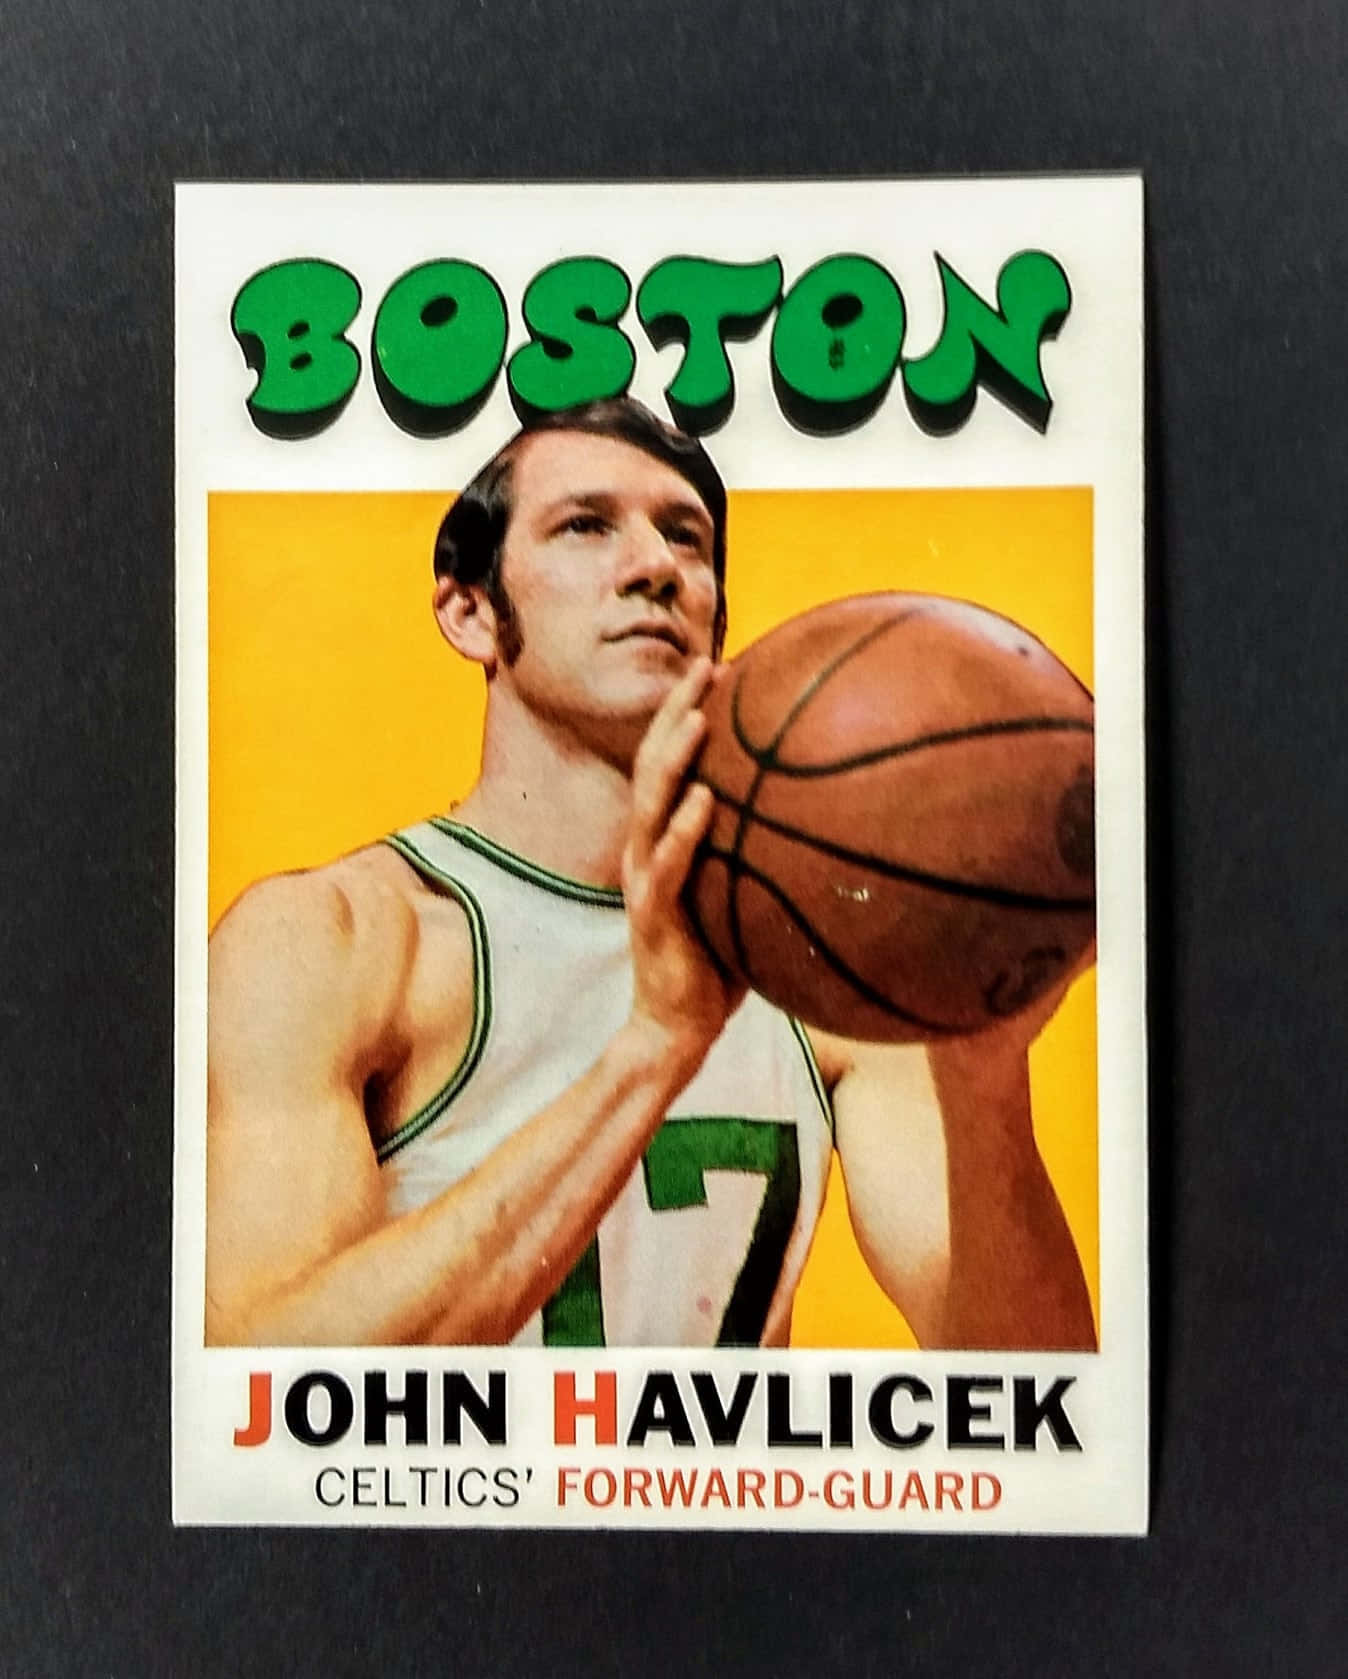 Vintage-plakat Von John Havlicek Im Basketball Wallpaper